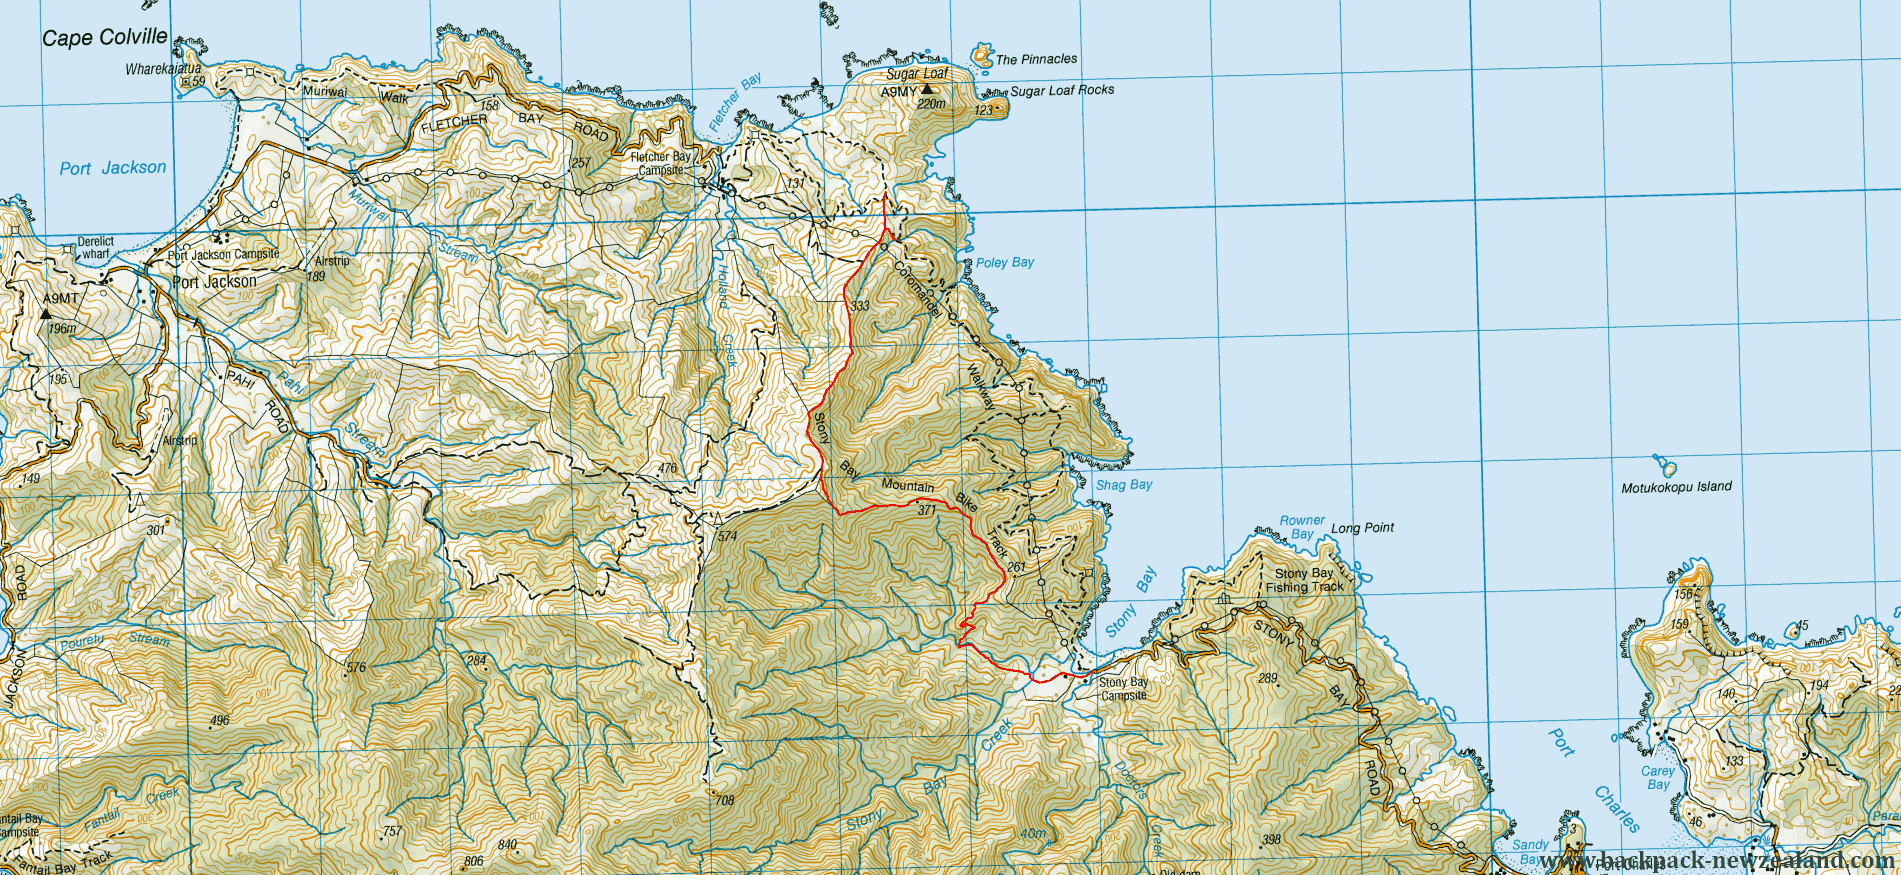 Stony Bay Mountain Bike Track Map - New Zealand Tracks